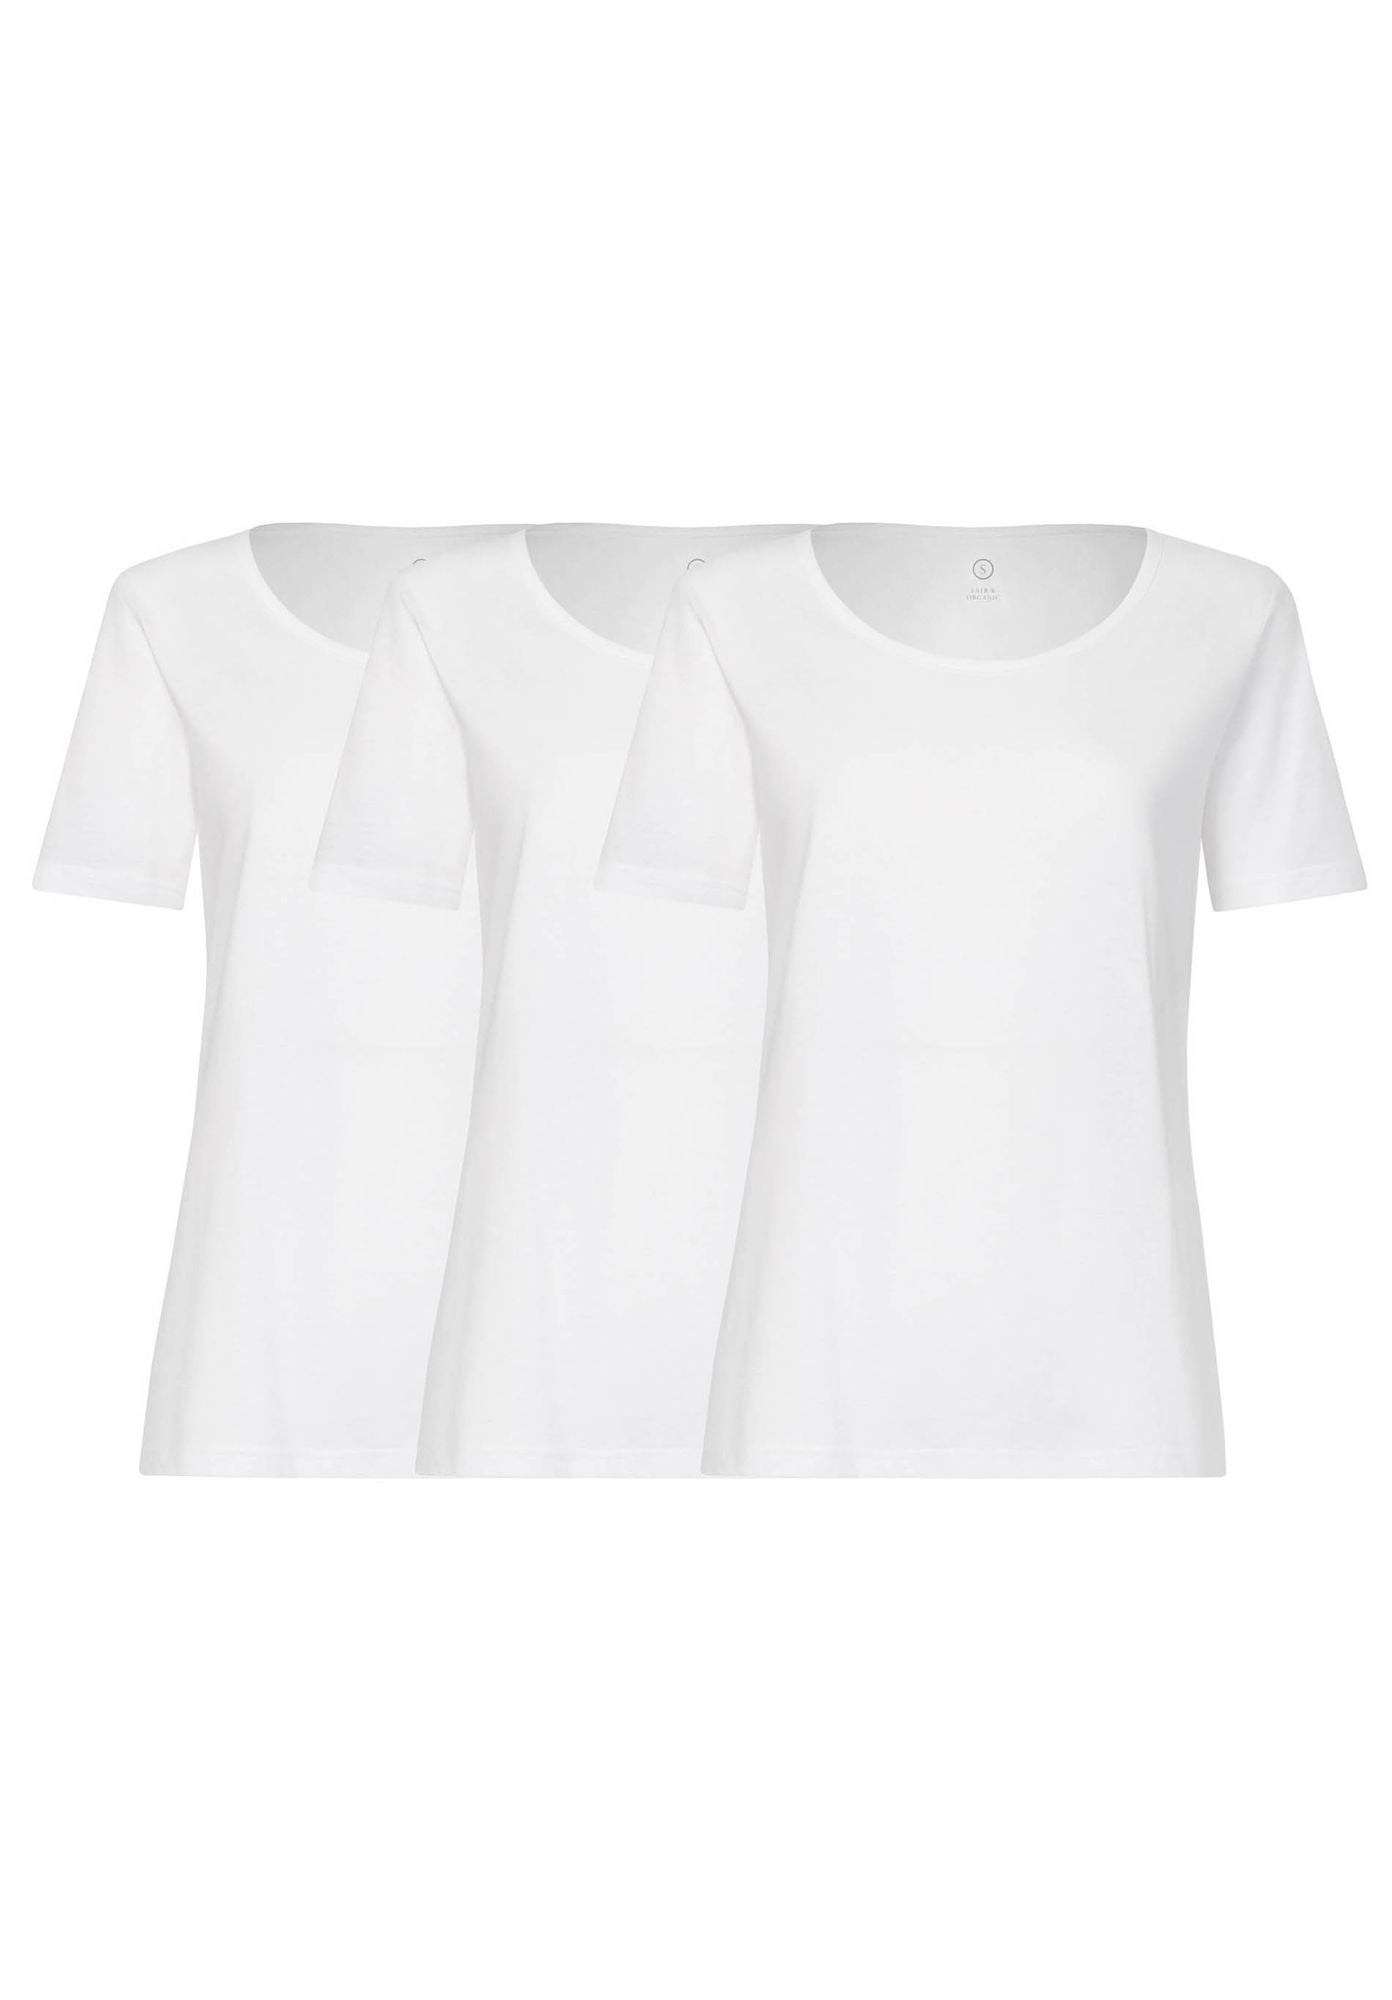 3 Pack BTD64 T-Shirt White